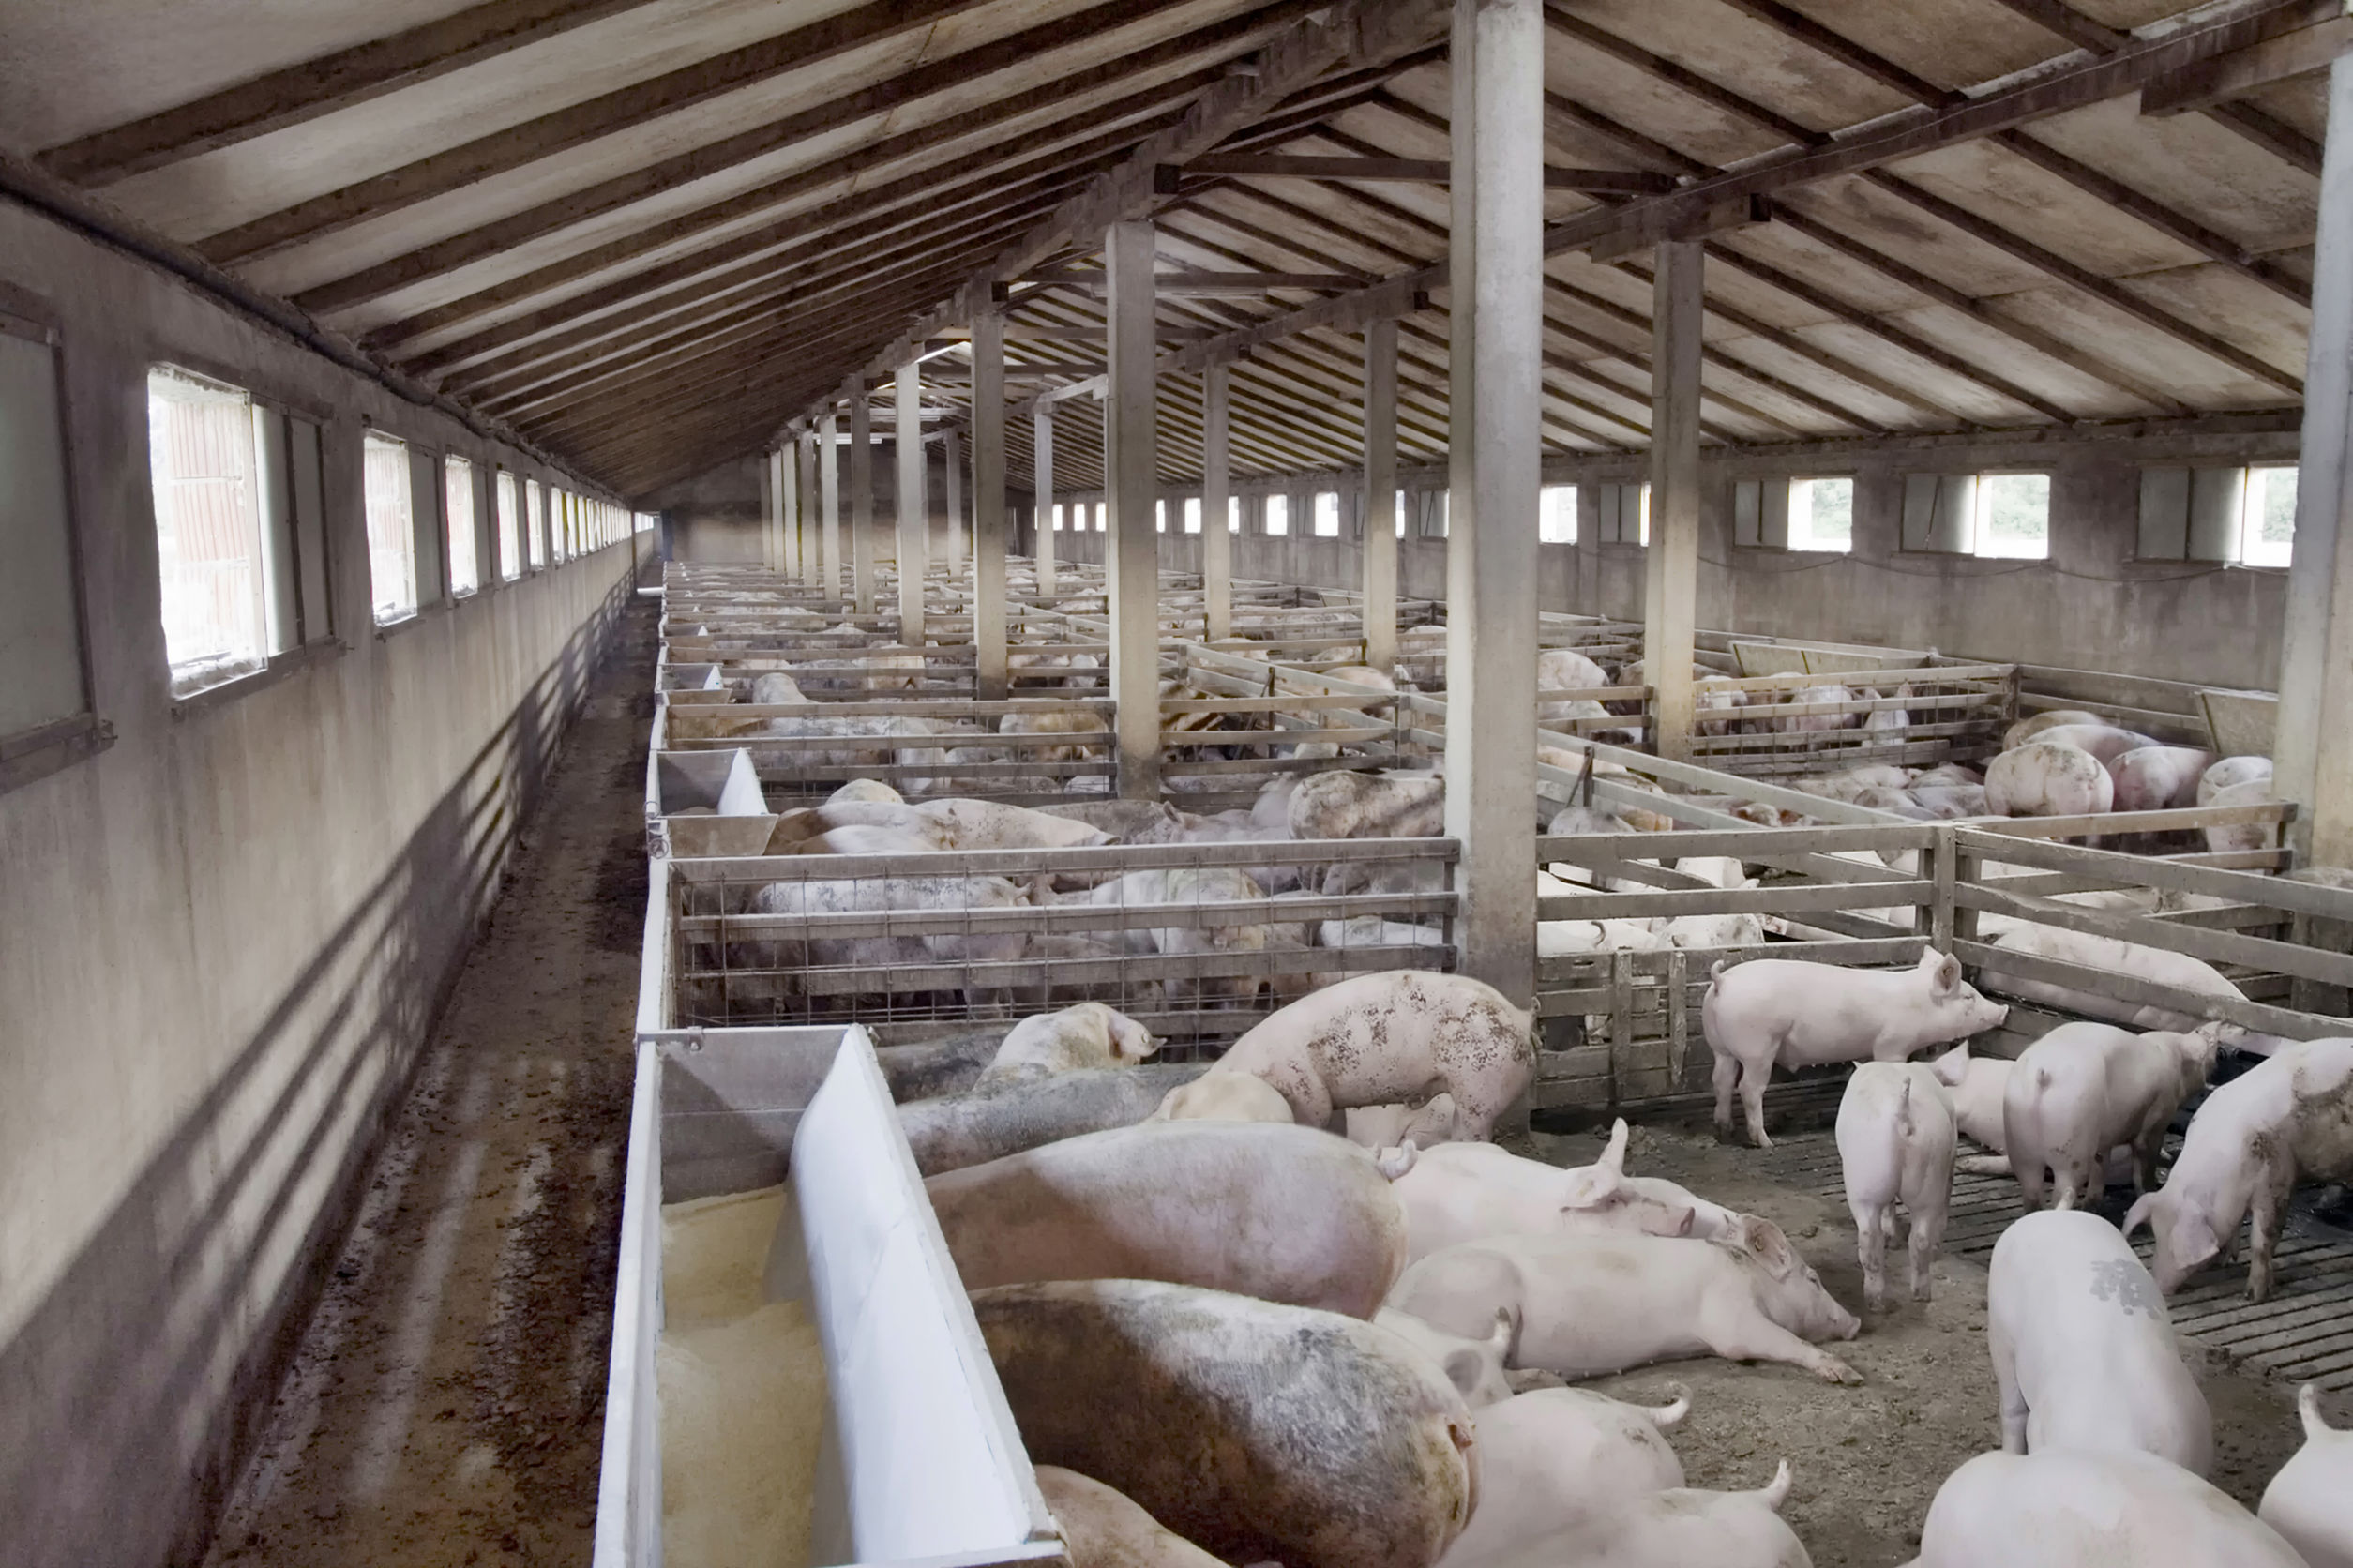 Bilanţul pestei porcine până la această oră: 159.645 de porci bolnavi de pestă şi sacrificaţi şi 11 judeţe afectate